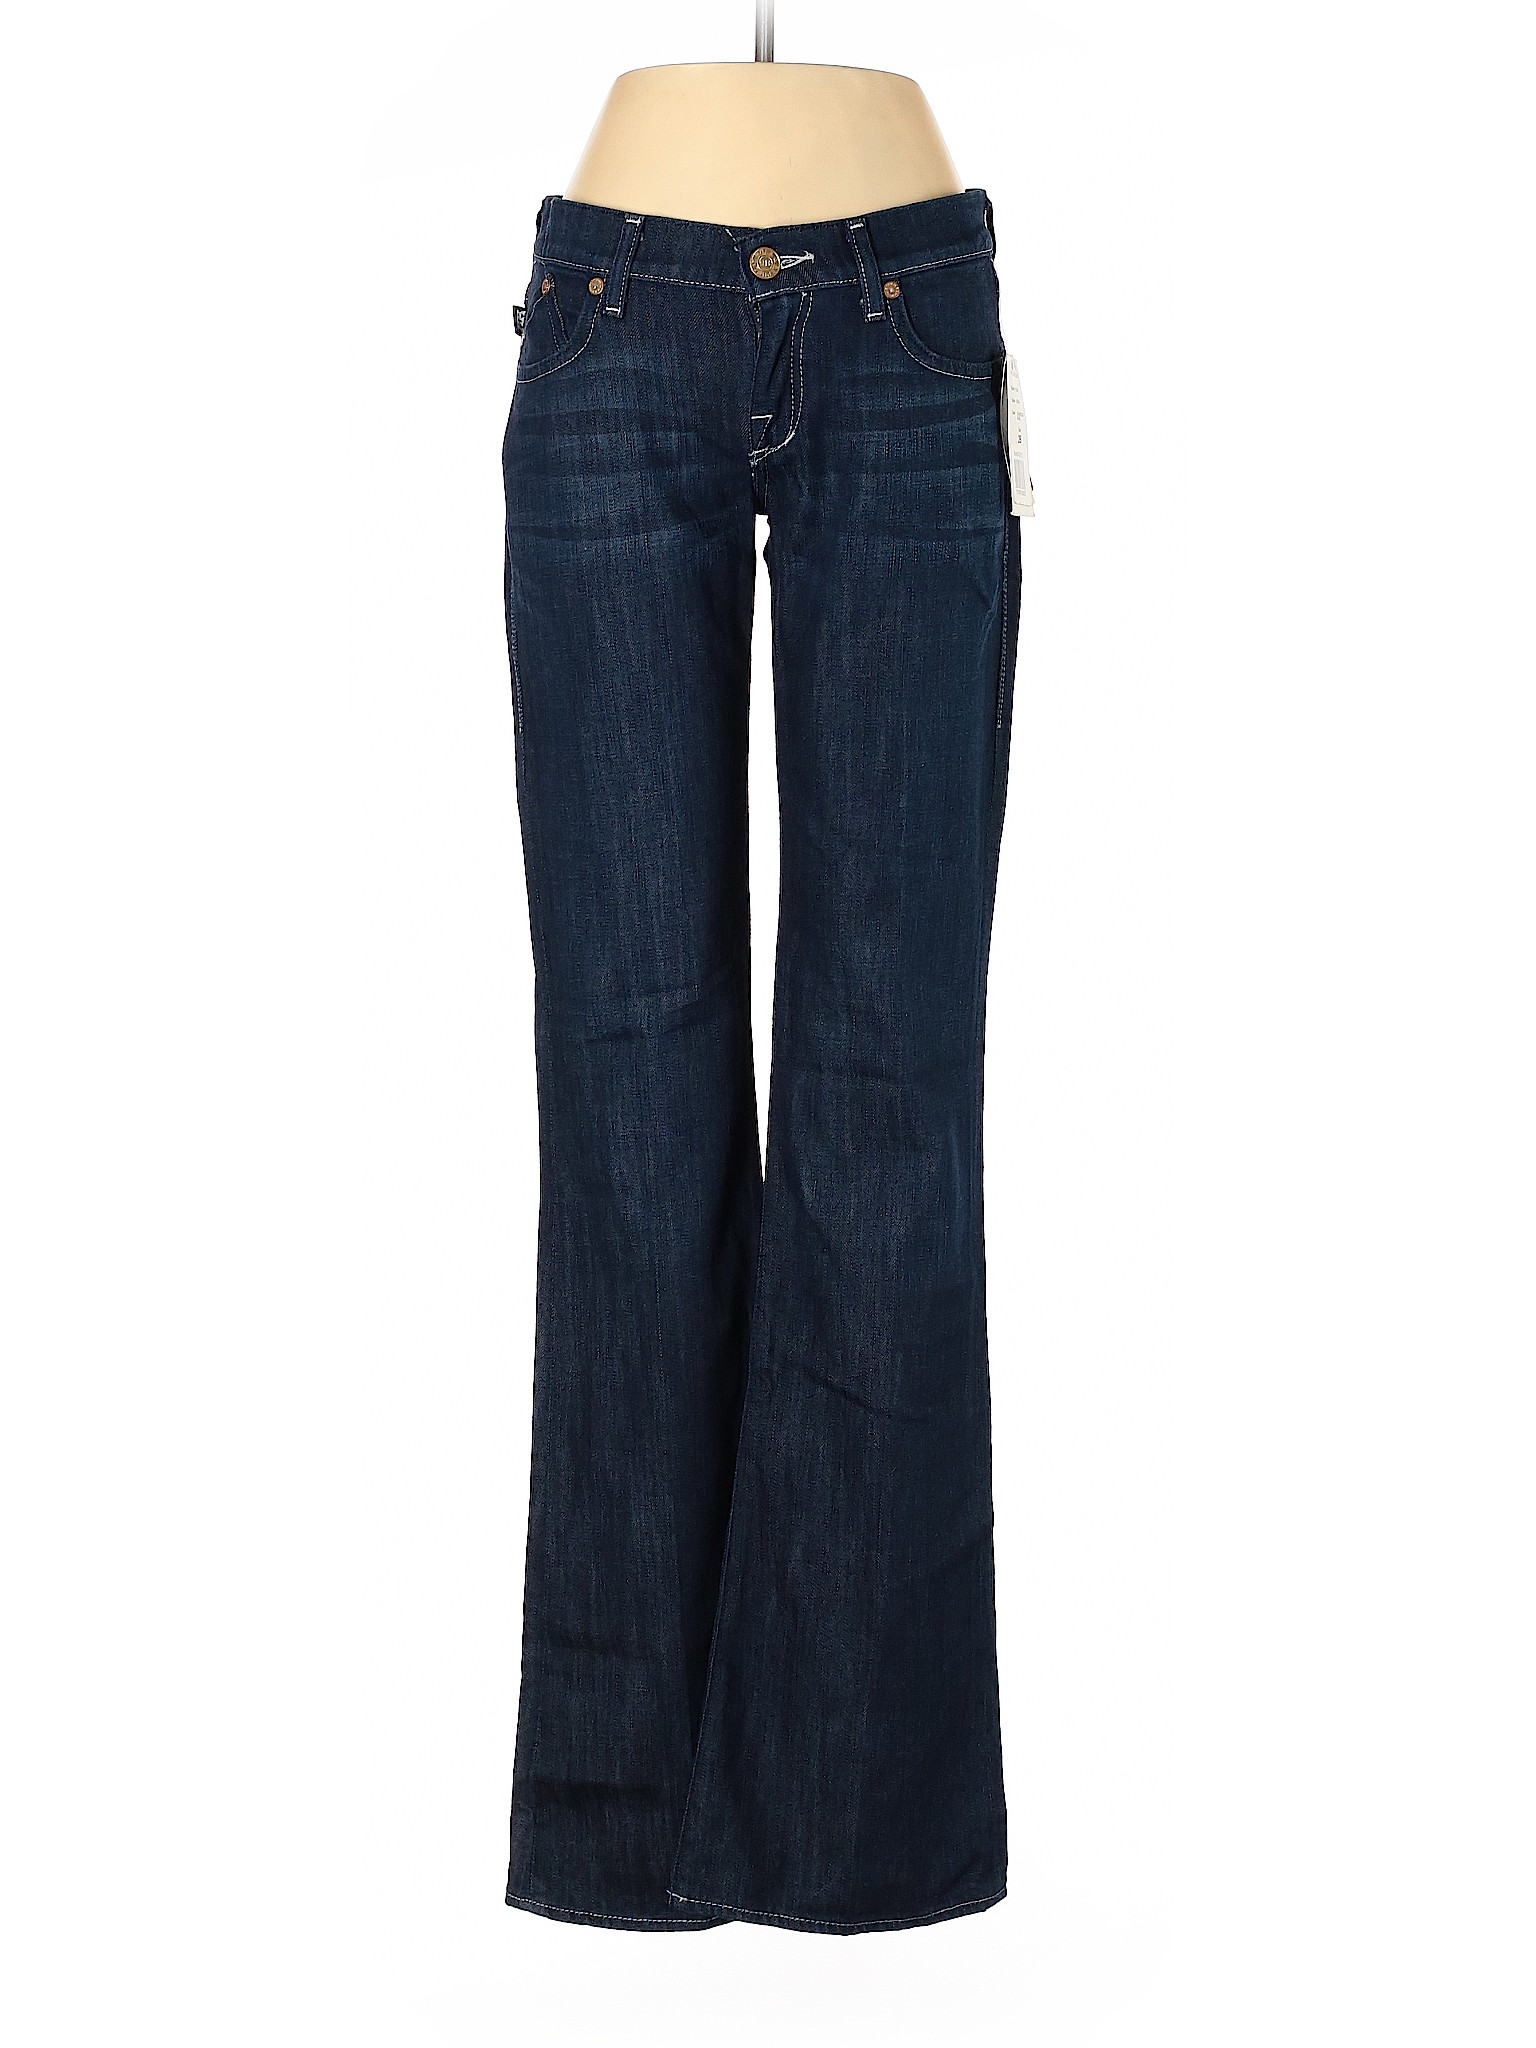 NWT Rock & Republic Women Blue Jeans 26W | eBay